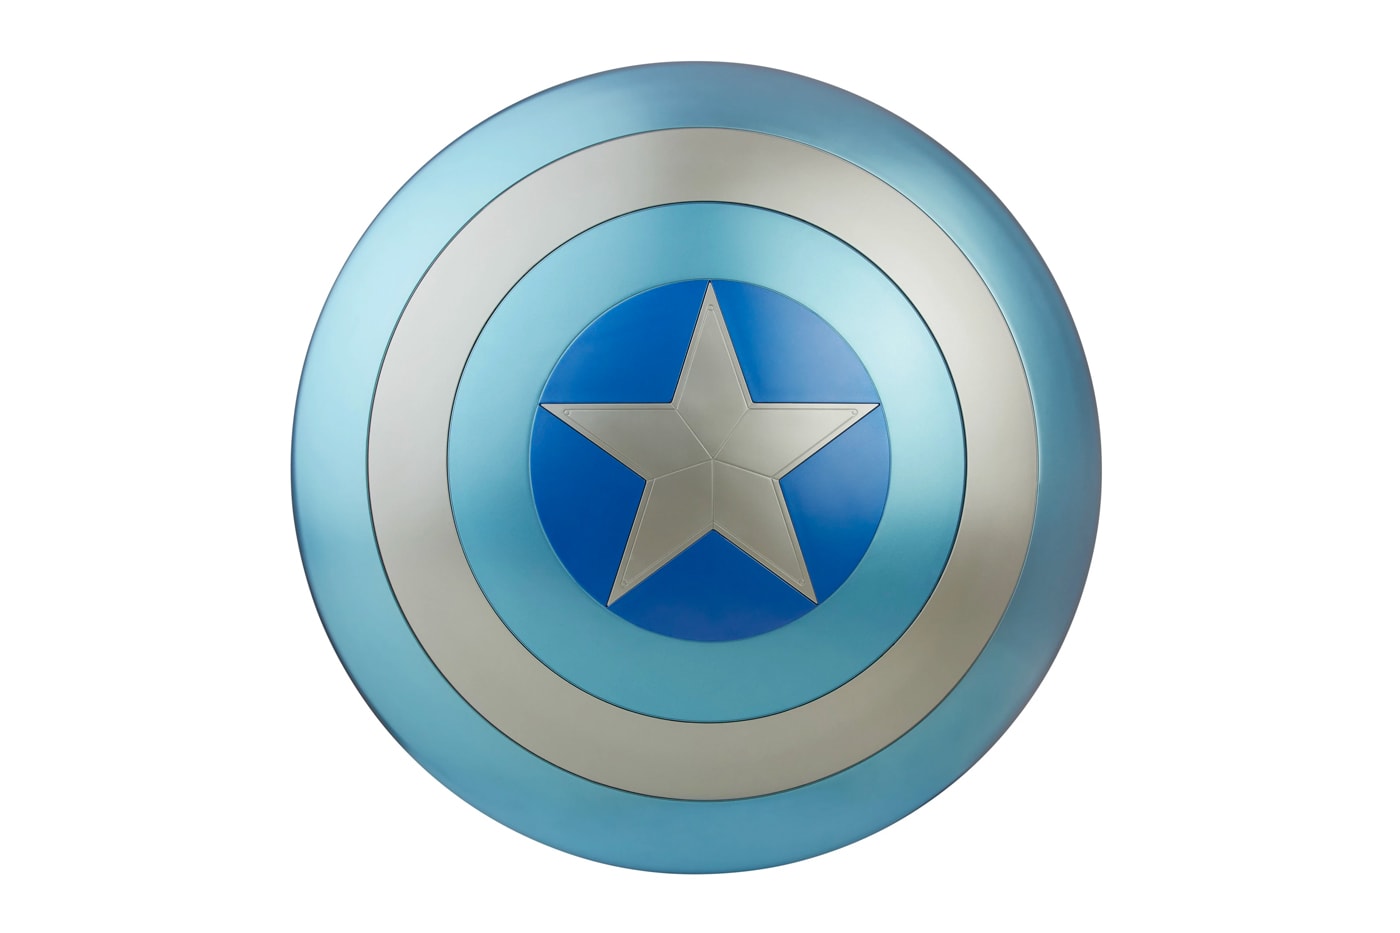 キャプテン・アメリカのステルス版シールドが実物大トイになってリリース hasbro pulse Marvel Legends Captain America Stealth Shield Release endgame winter soldier cosplay toys design super heroes 